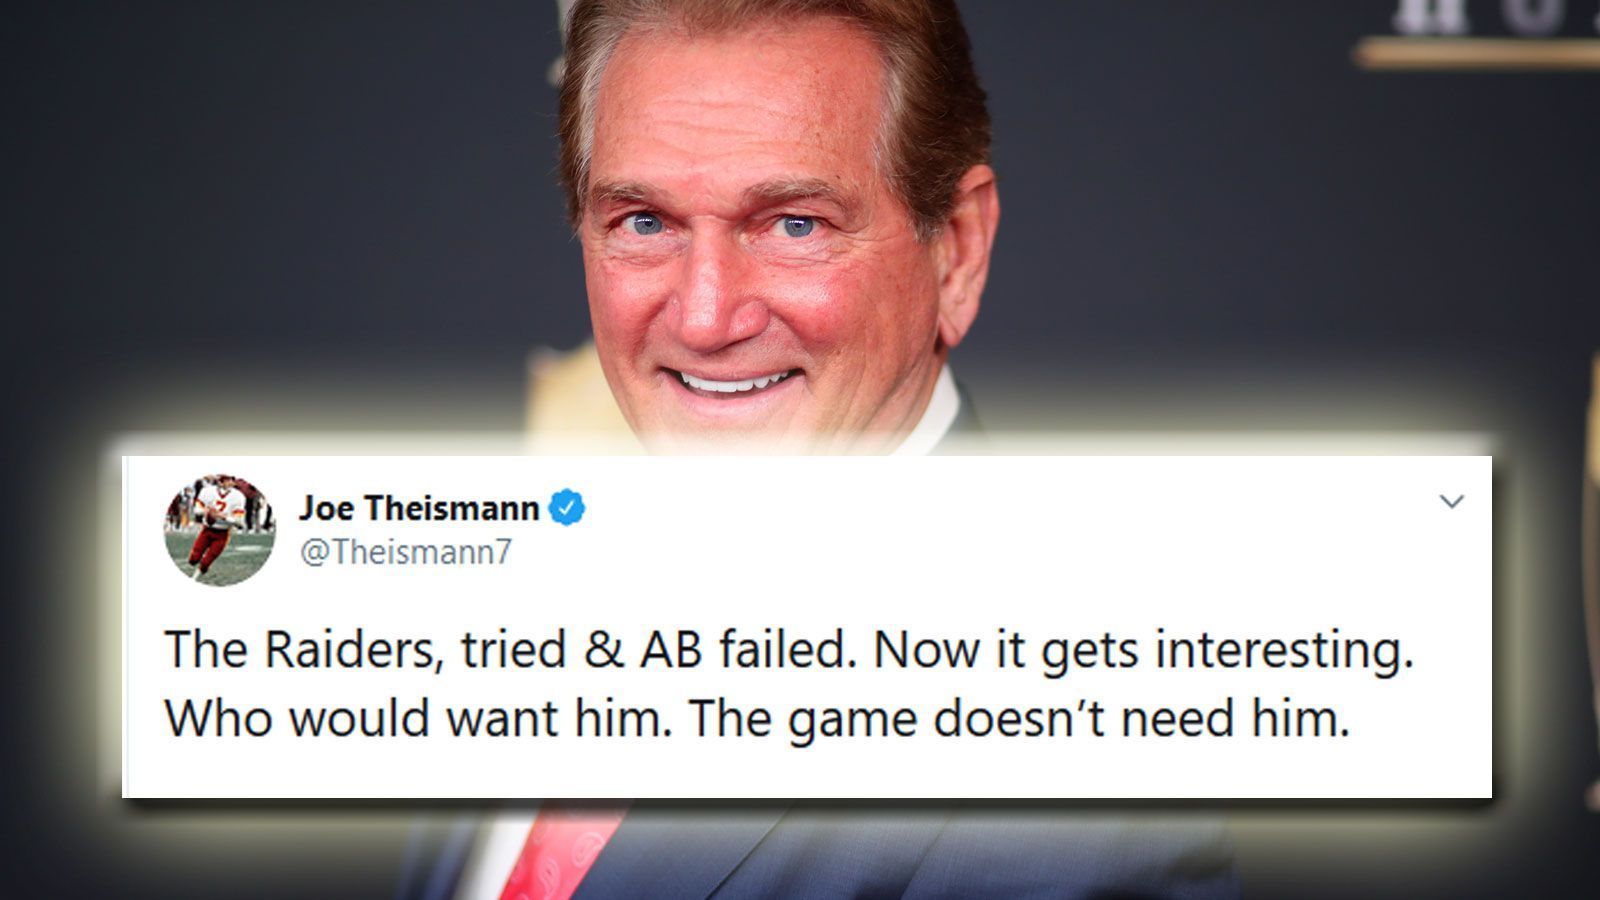 
                <strong>Joe Theismann</strong><br>
                Quarterback der Washington Redskins von 1974 bis 1985, Fernsehmoderator: "Die Raiders haben es probiert, AB hat es verdorben. Jetzt wird es interessant. Wer will ihn? Der Football braucht ihn nicht."
              